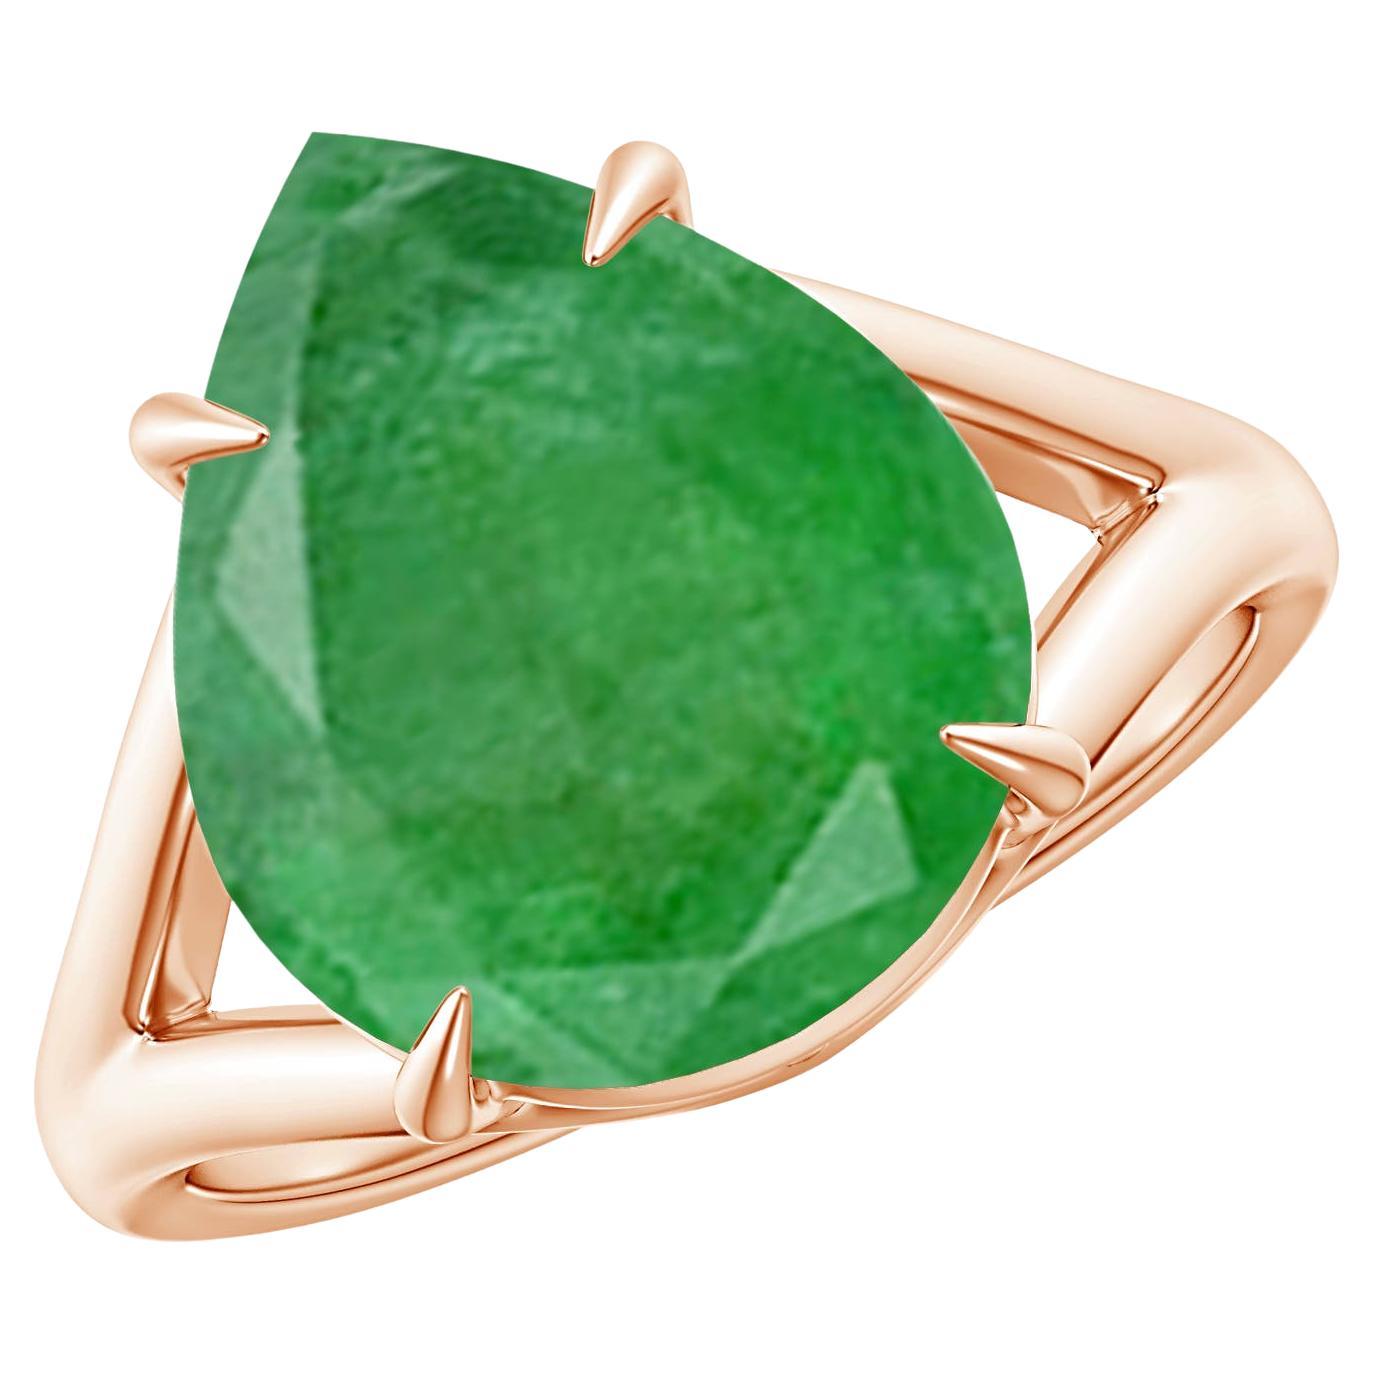 Im Angebot: ANGARA GIA zertifizierter natürlicher birnenförmiger Smaragdring mit geteiltem Schaft aus Roségold ()